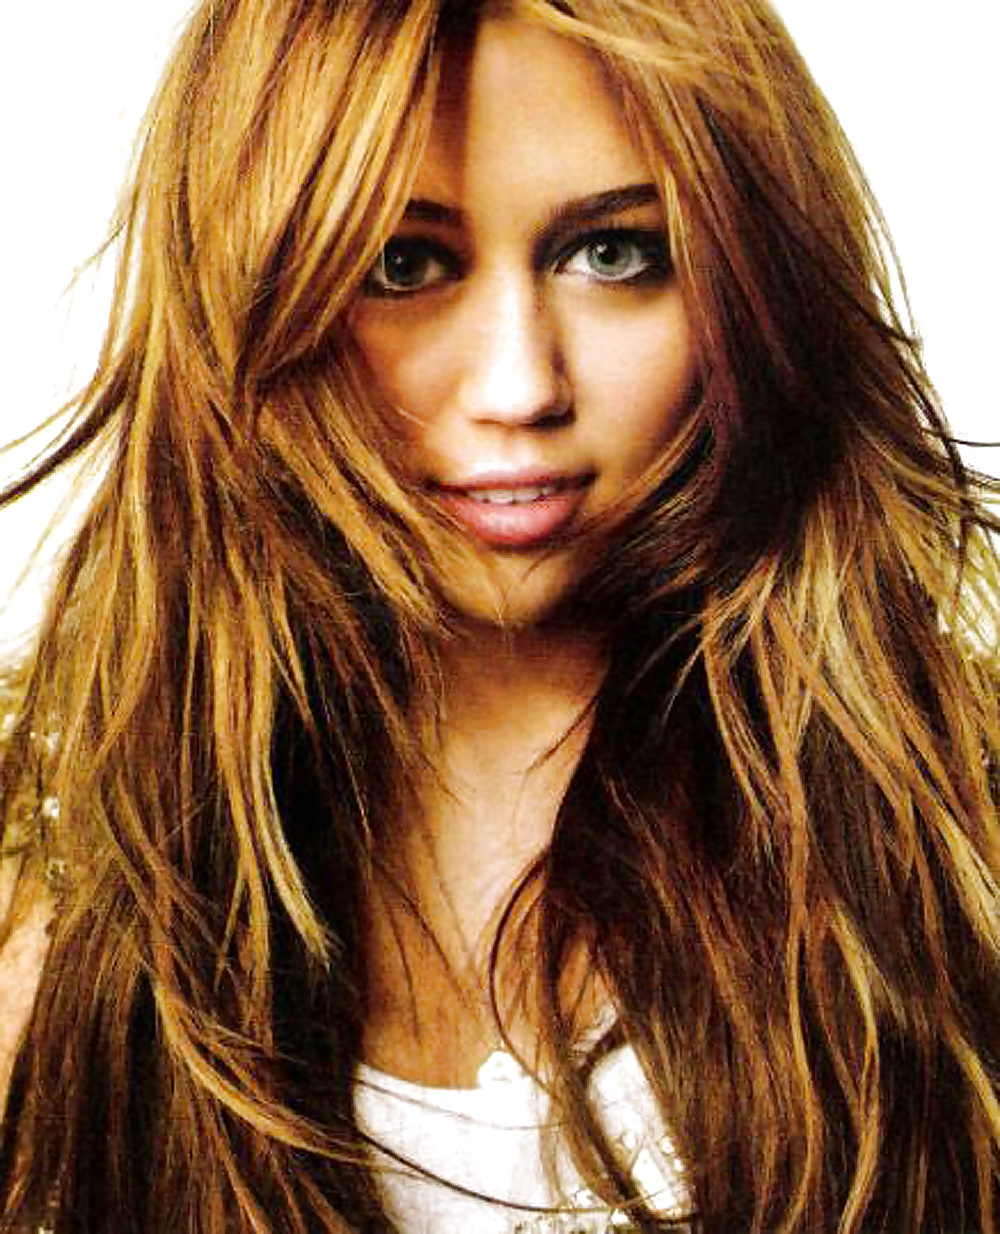 Le Meilleur De Miley Cyrus #24940569